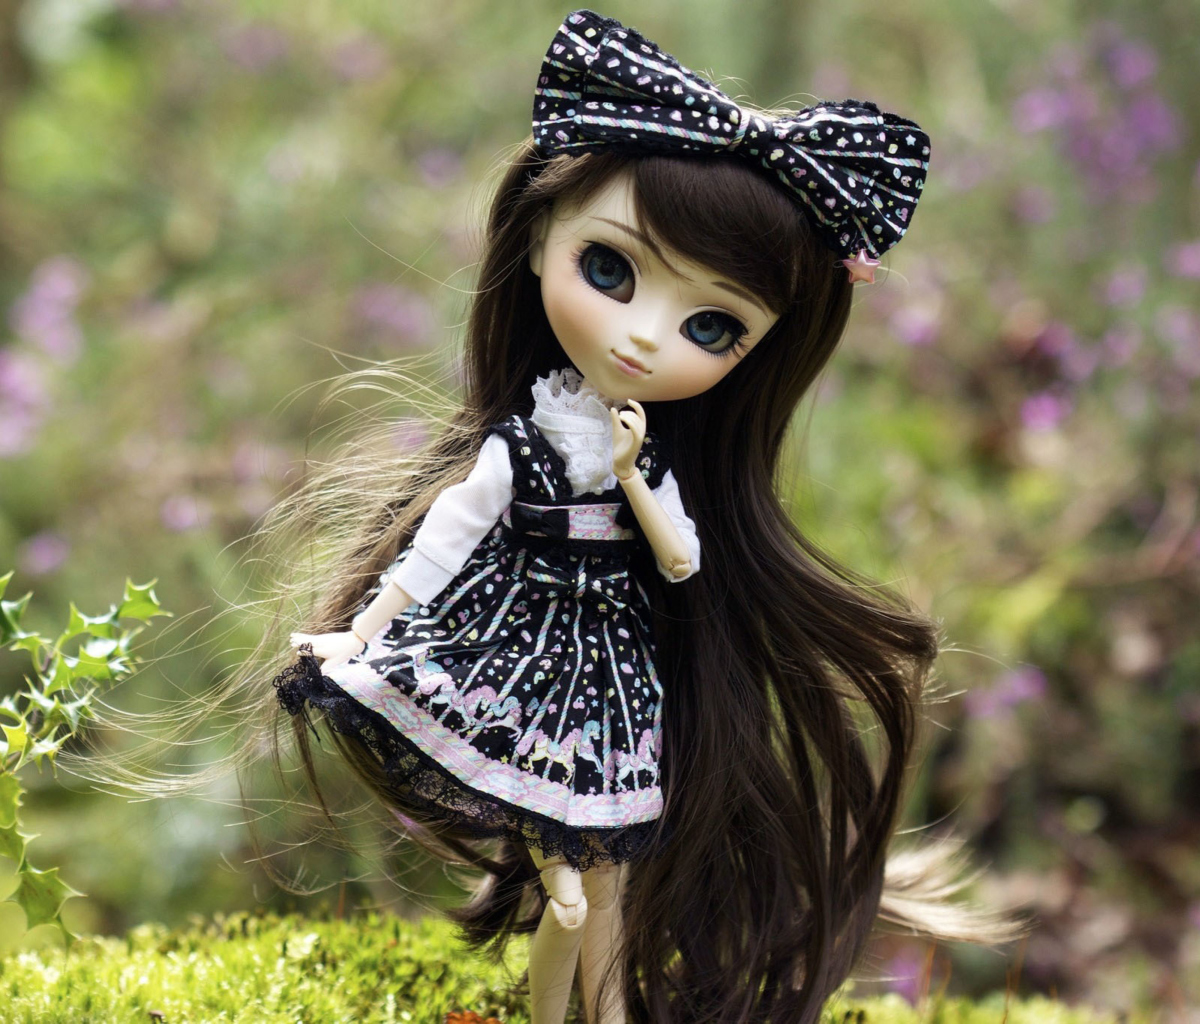 Das Cute Doll With Dark Hair And Black Bow Wallpaper 1200x1024